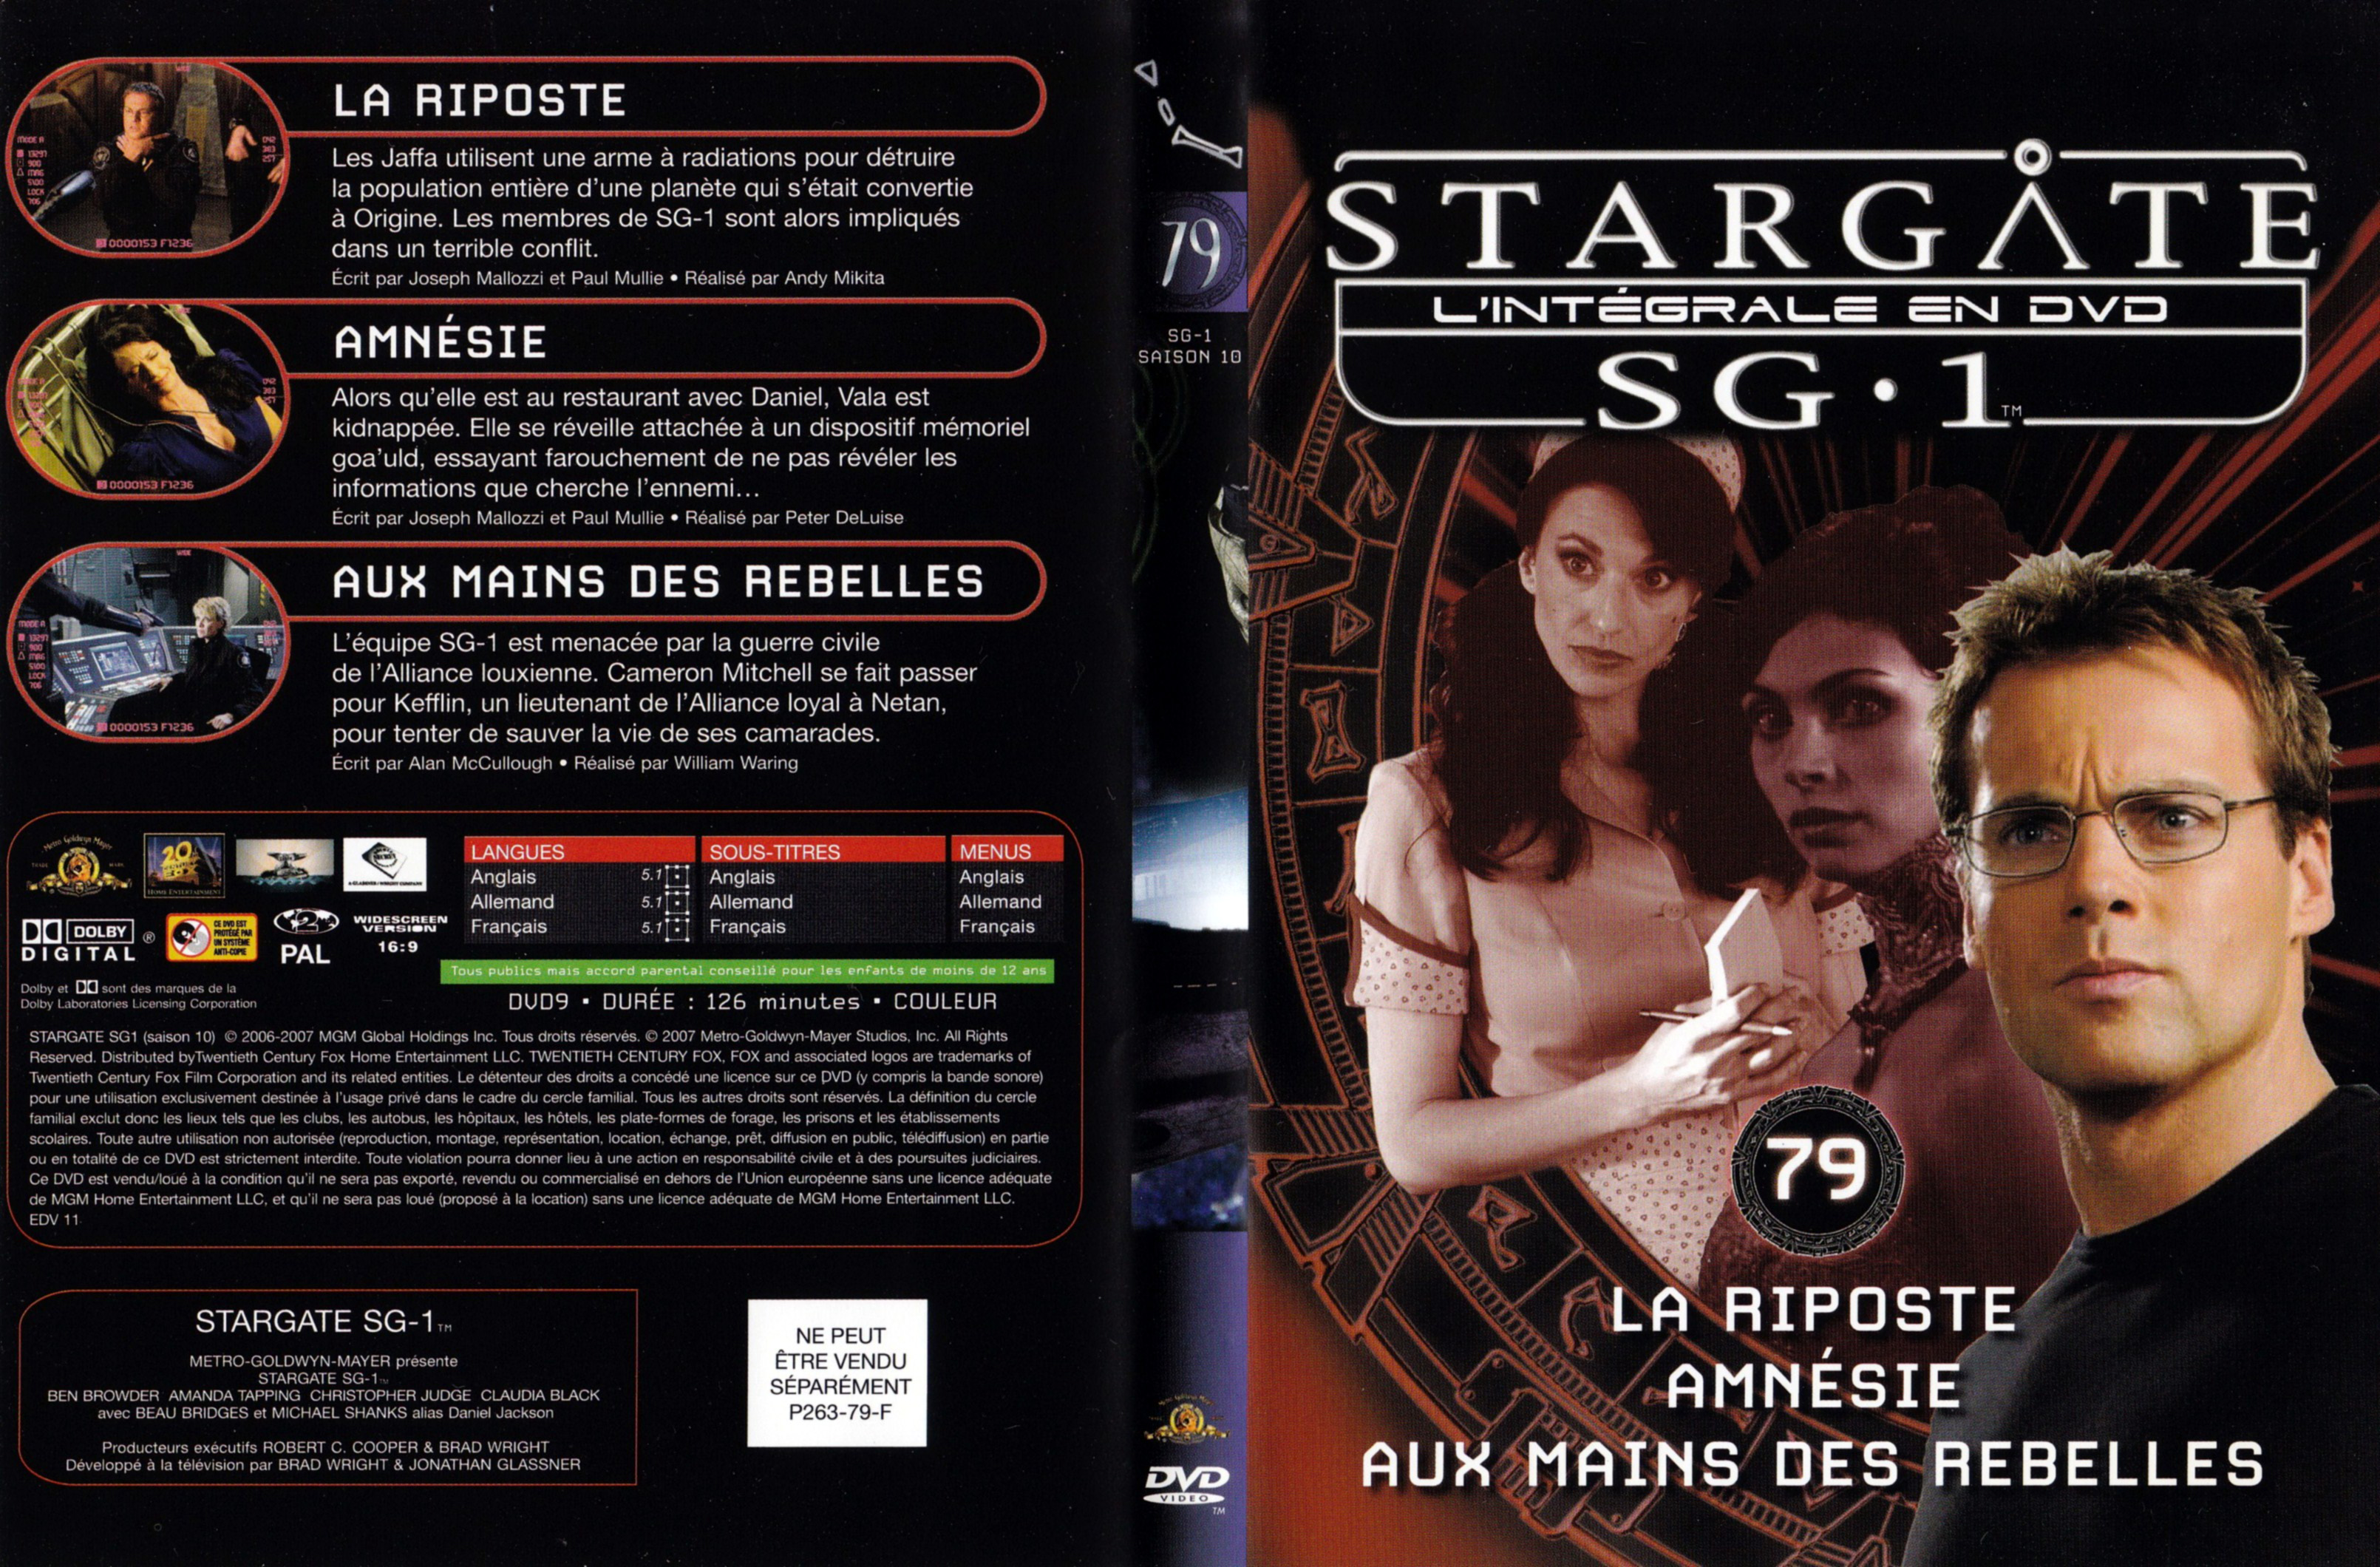 Jaquette DVD Stargate SG1 Intgrale Saison 10 vol 79